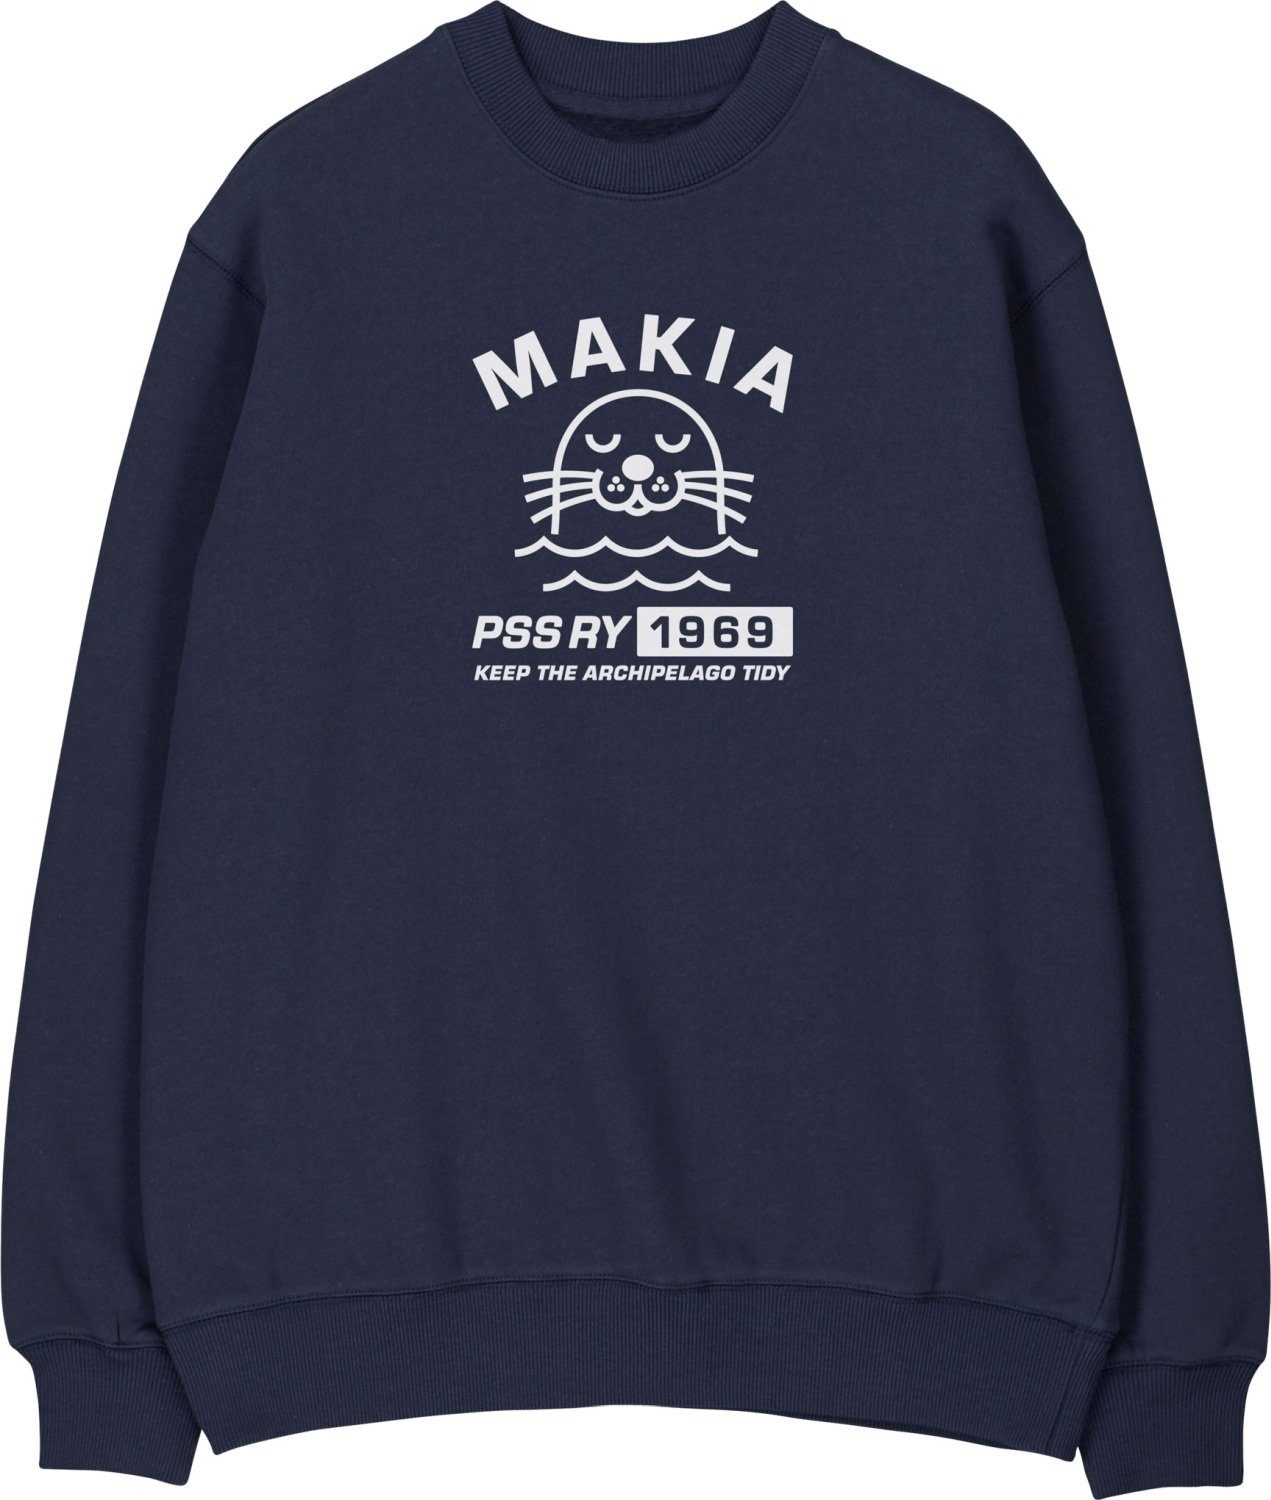 Edition mit Konnus & dunkelblau für Special Longsweatshirt Schären Seen MAKIA Print